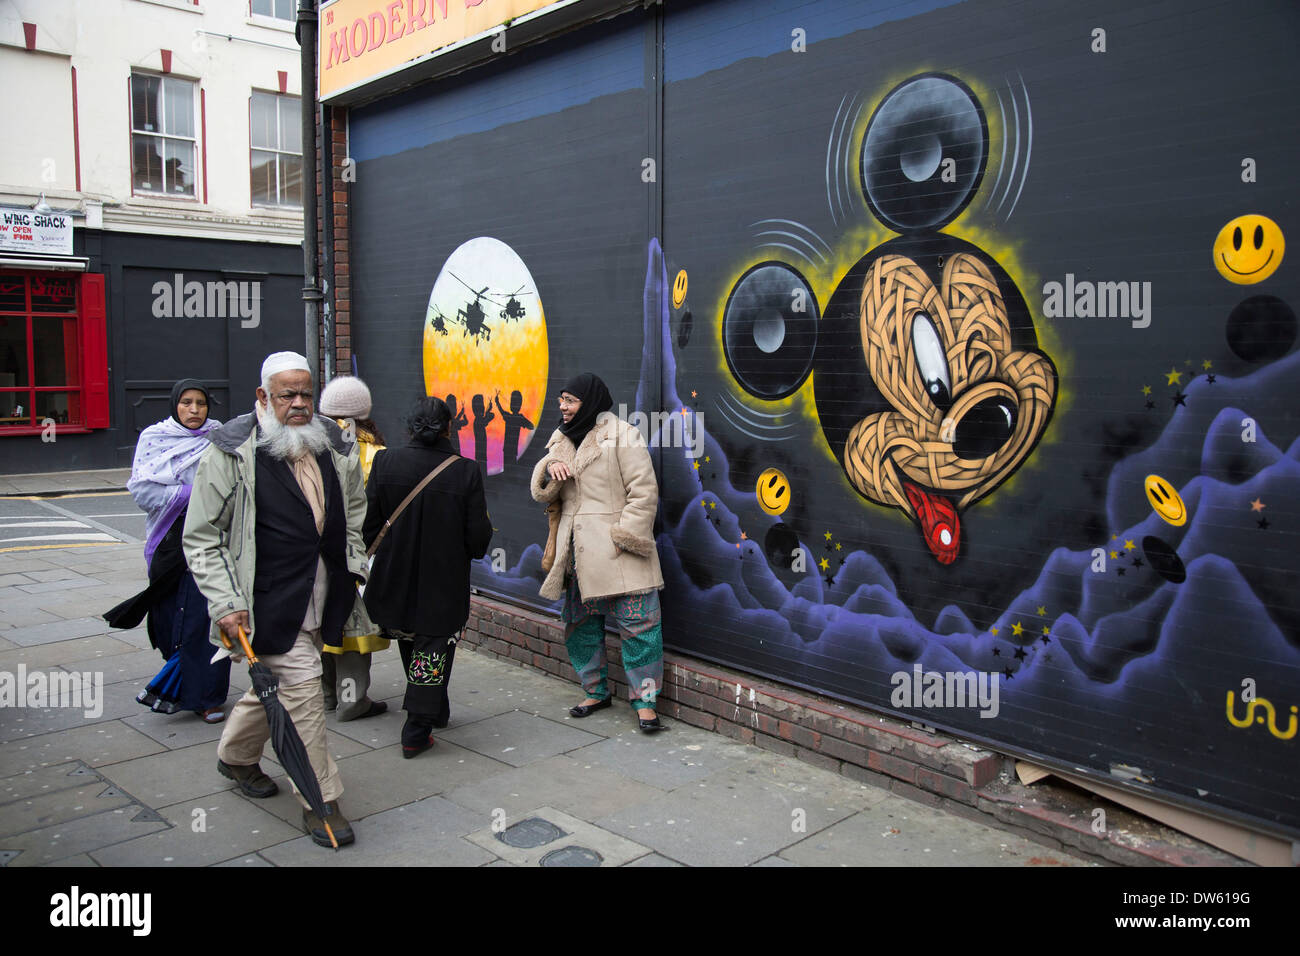 Arte di strada vicino a Brick Lane nell'East End di Londra, Regno Unito. I musulmani a piedi passato un topolino di lavoro. Foto Stock